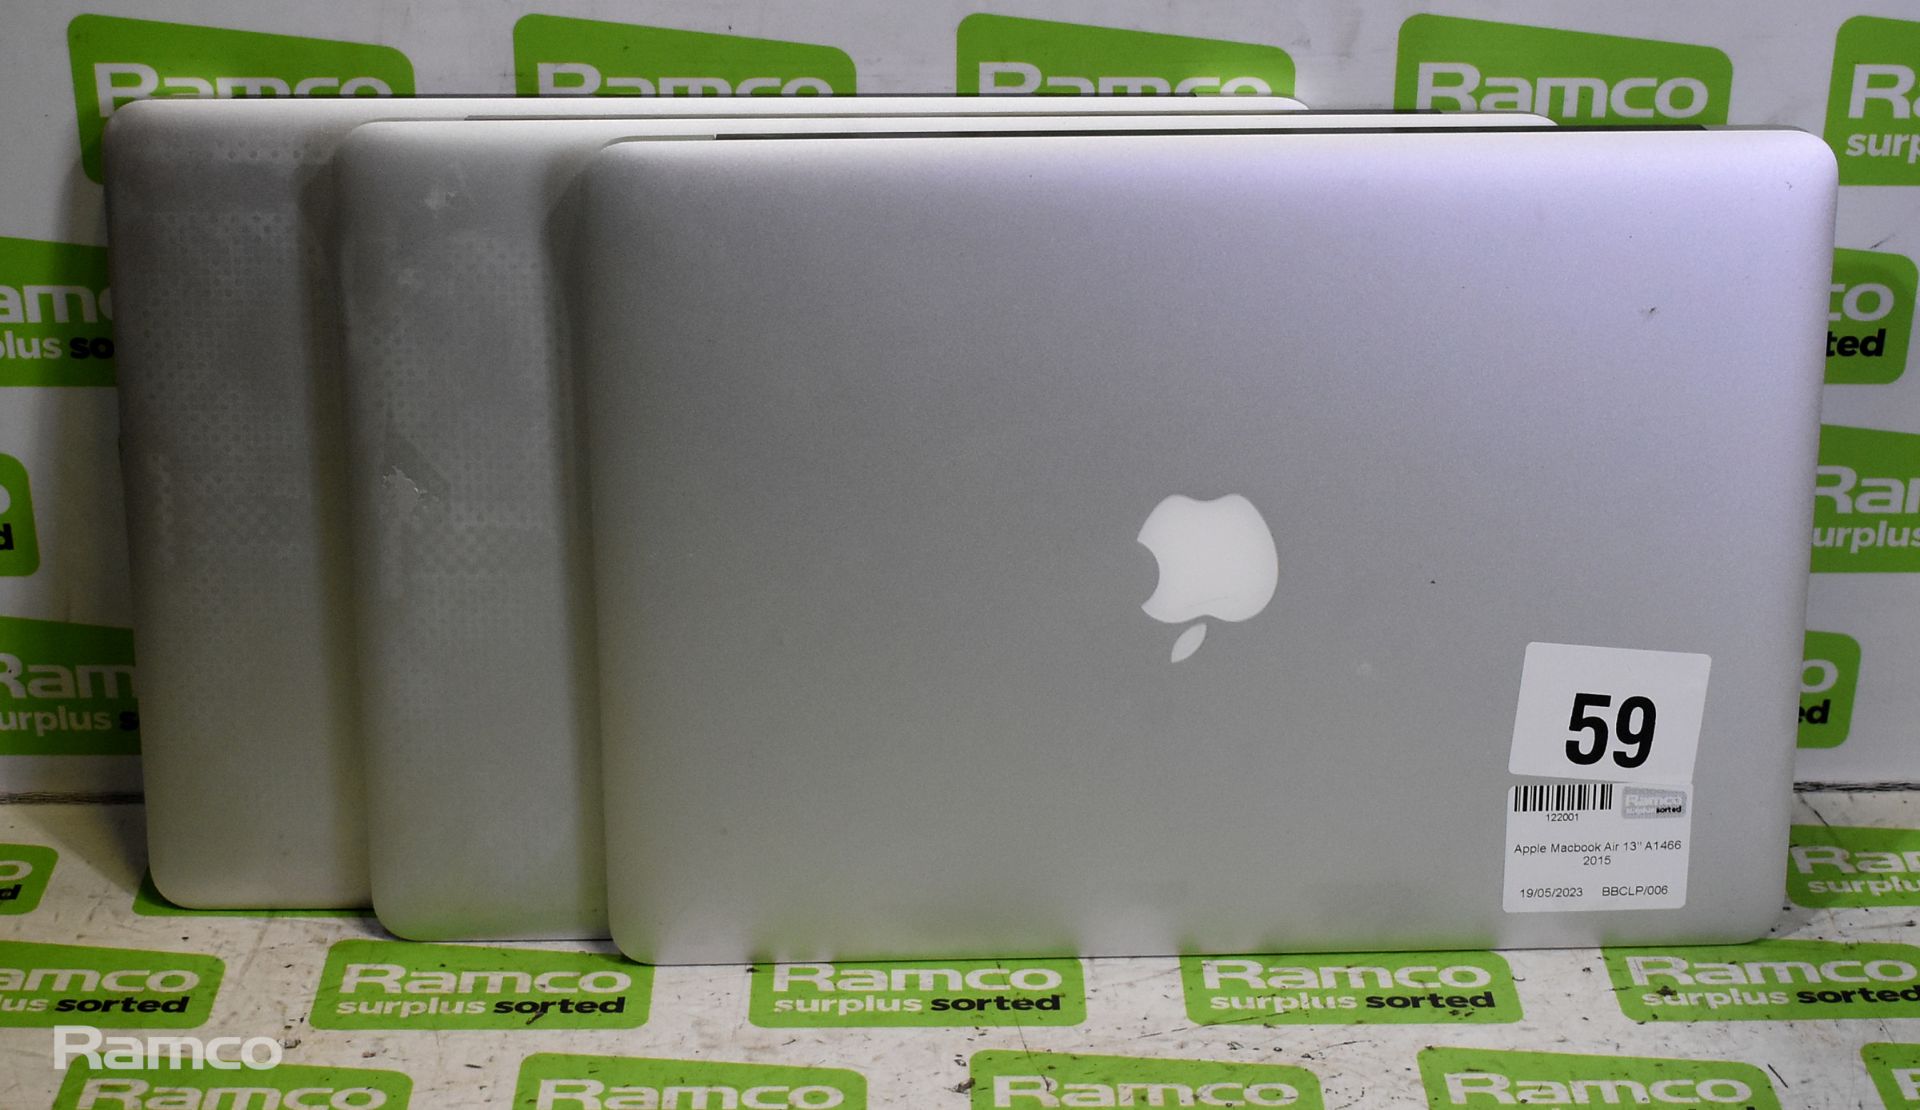 3x Apple Macbook Airs - 13 inch - A1466 - 2015